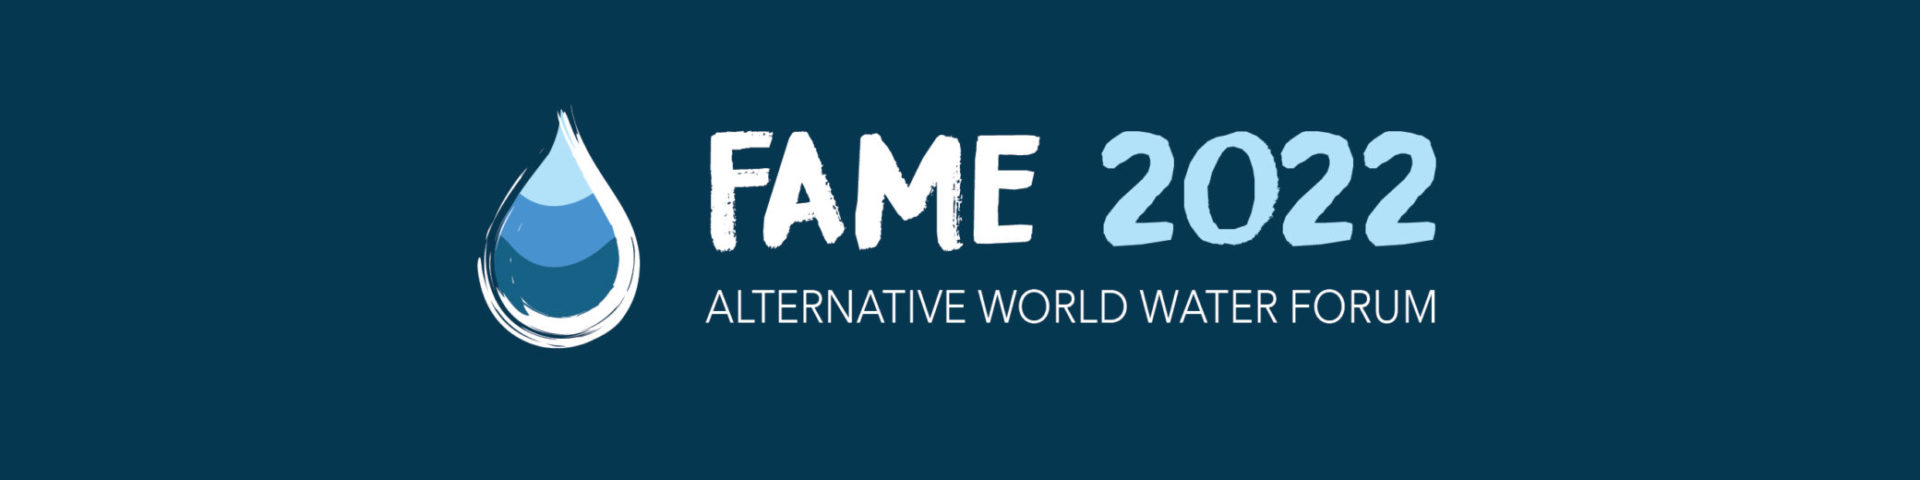 Banners Logo FAME Dakar 2022